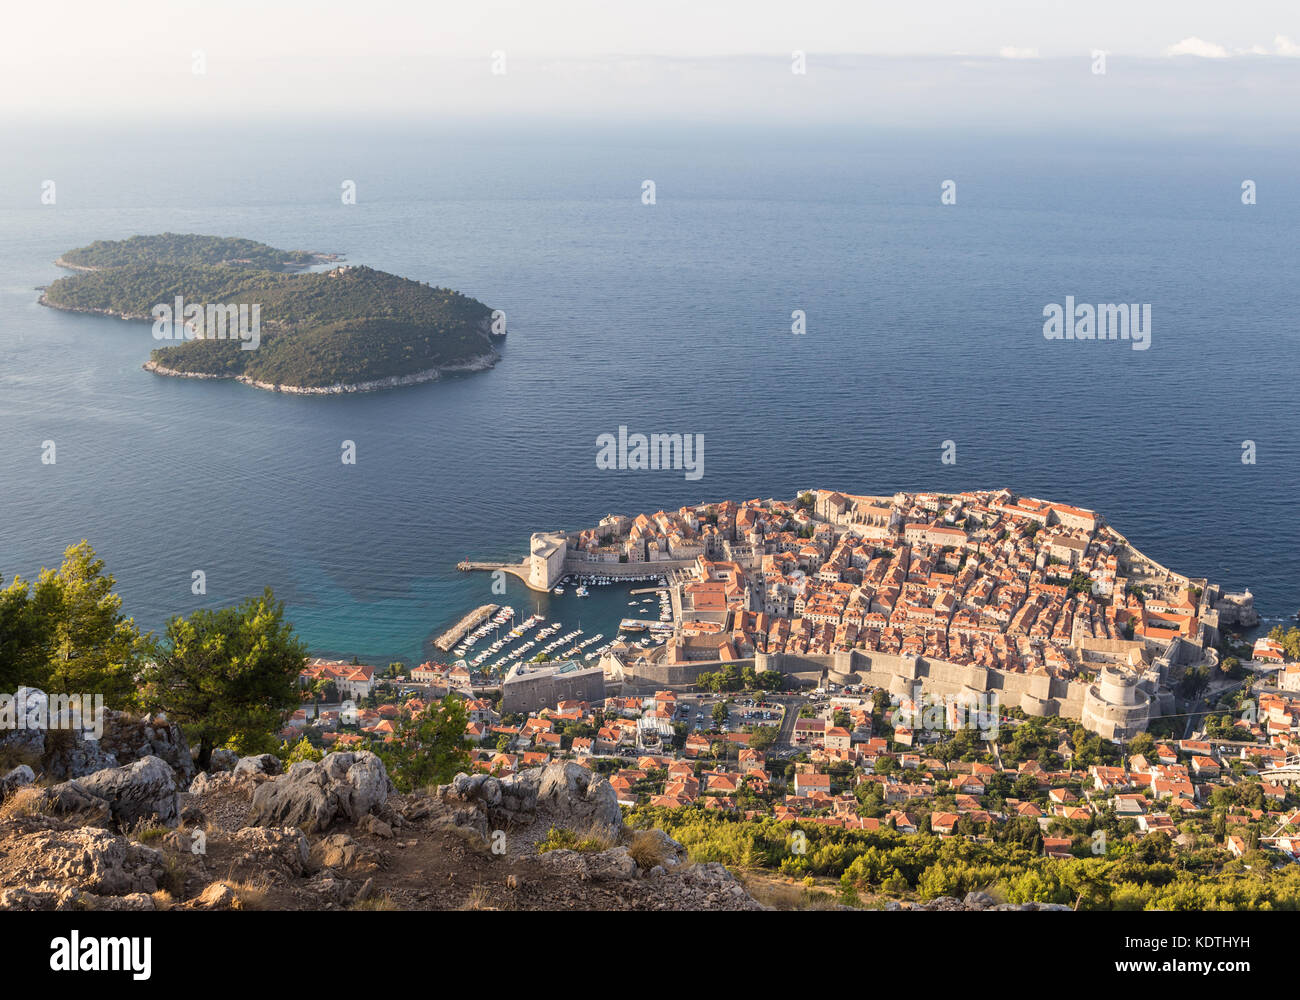 El amanecer sobre el famoso casco antiguo de Dubrovnik vista desde un punto de vista sobre la costa adriática de Croacia en Europa oriental Foto de stock